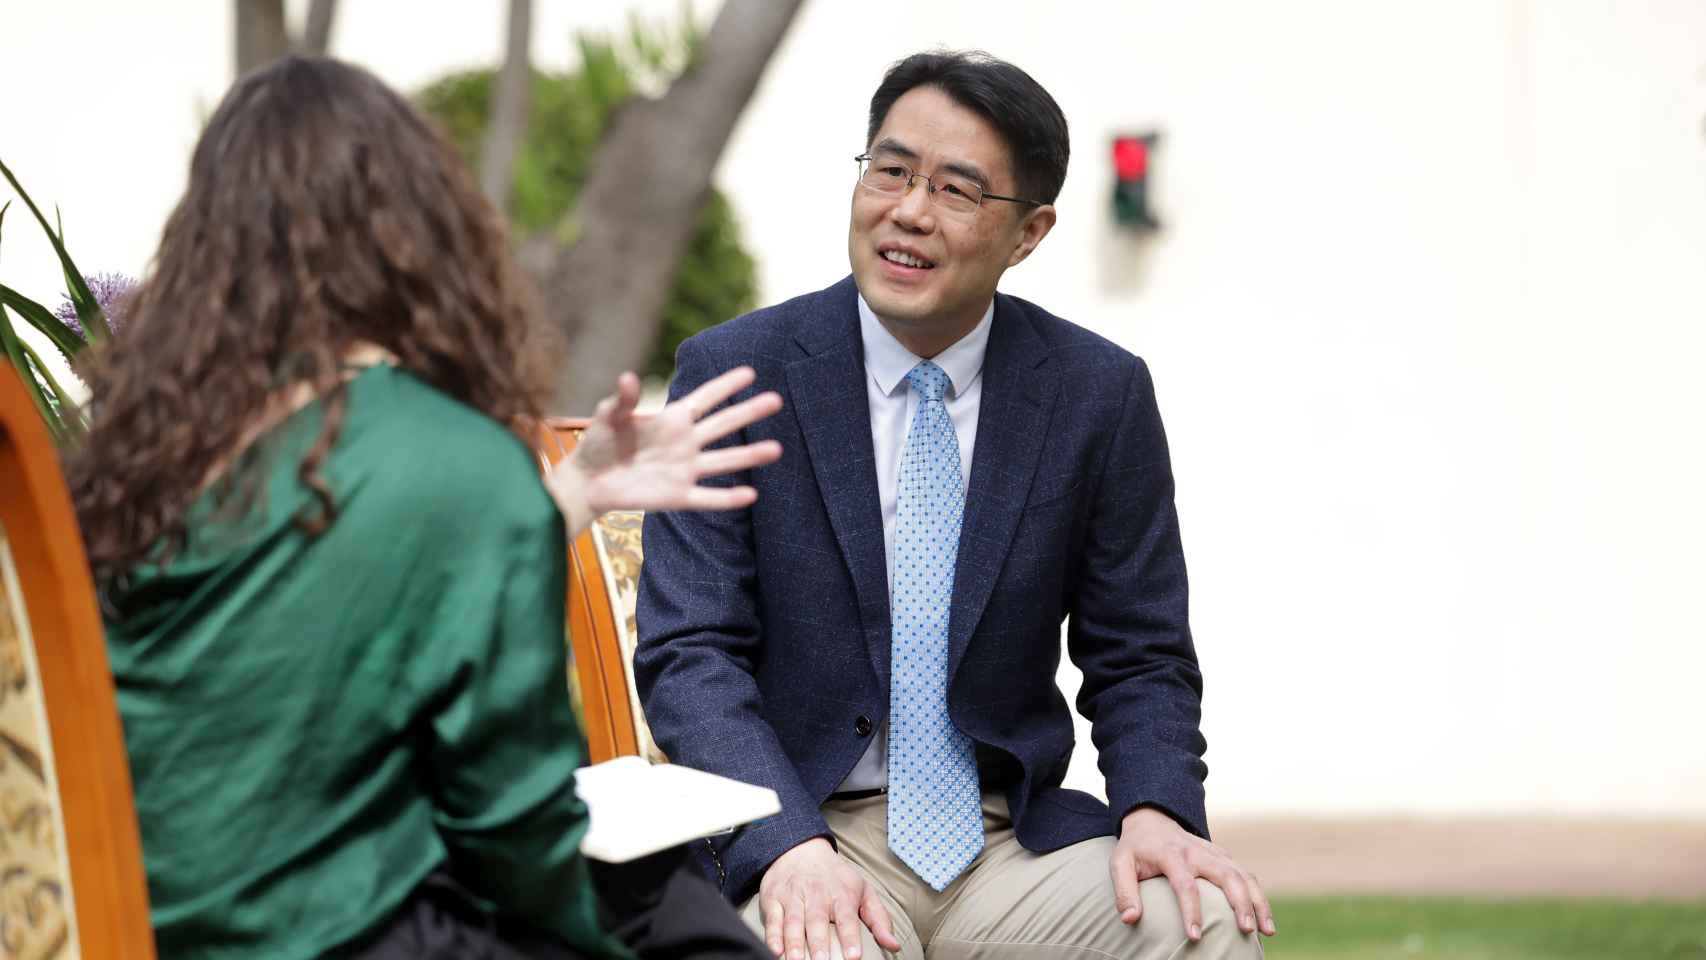 El cónsul chino, Zhu Jingyang, durante su entrevista con EL ESPAÑOL.